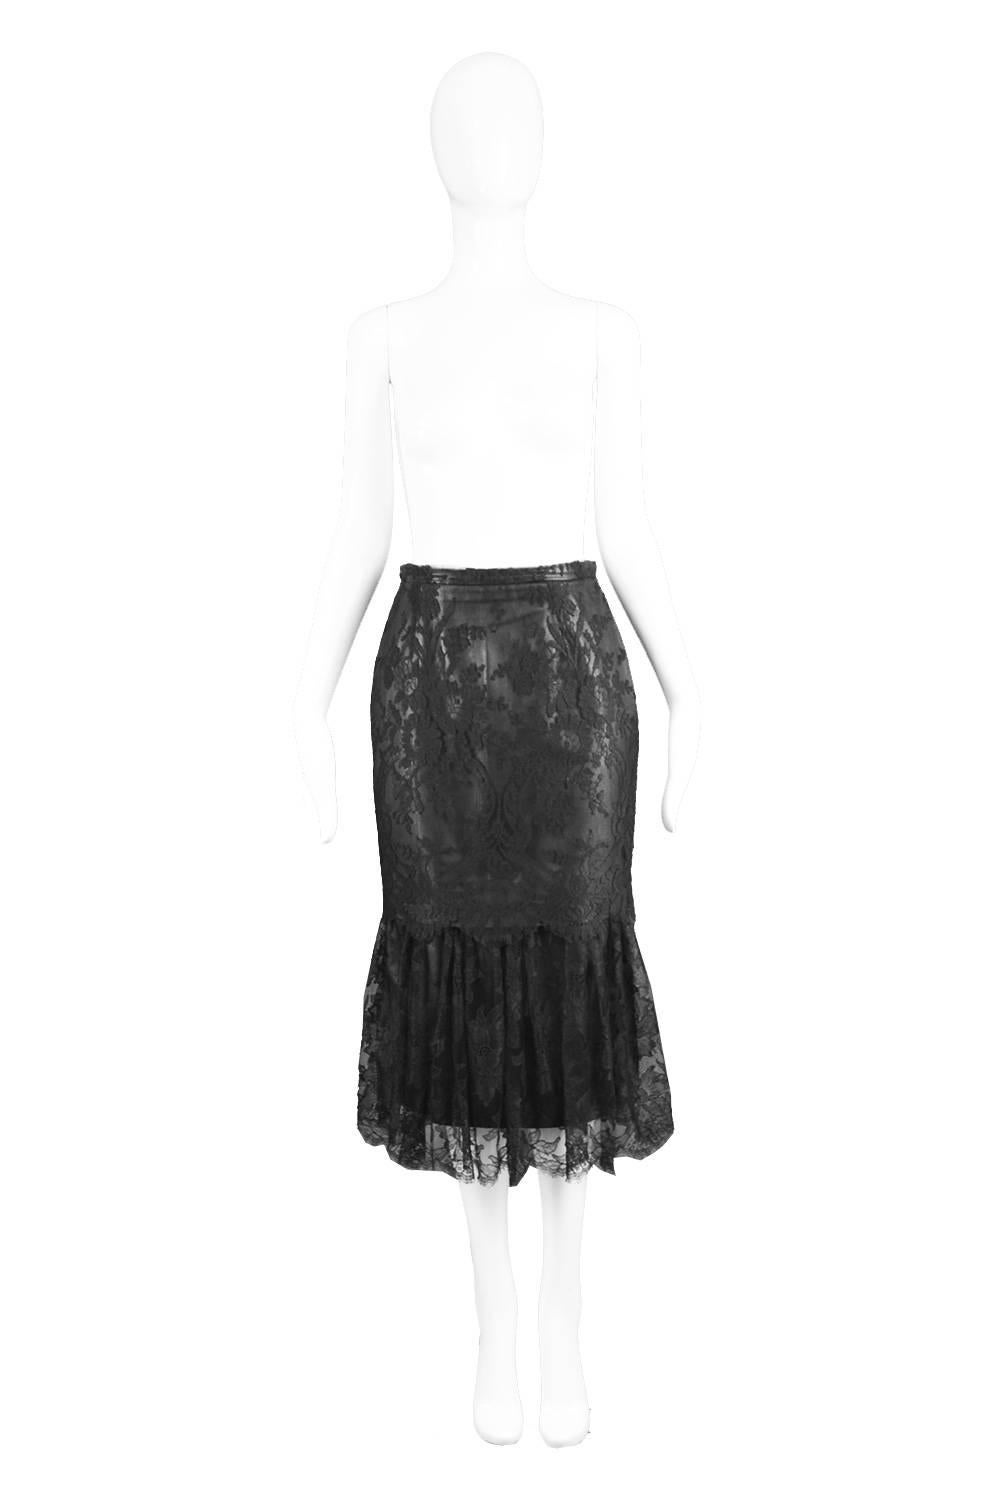 Istante by Versace Vintage 1990s Italian Leather & Lace Black Fishtail Skirt

Estimated Size: UK 8/ US 4/ EU 36. Please check measurements.
Waist - 26” / 66cm
Hips - 34” / 76cm
Length (Waist to Hem) - 31” / 79cm

Condition: Excellent vintage